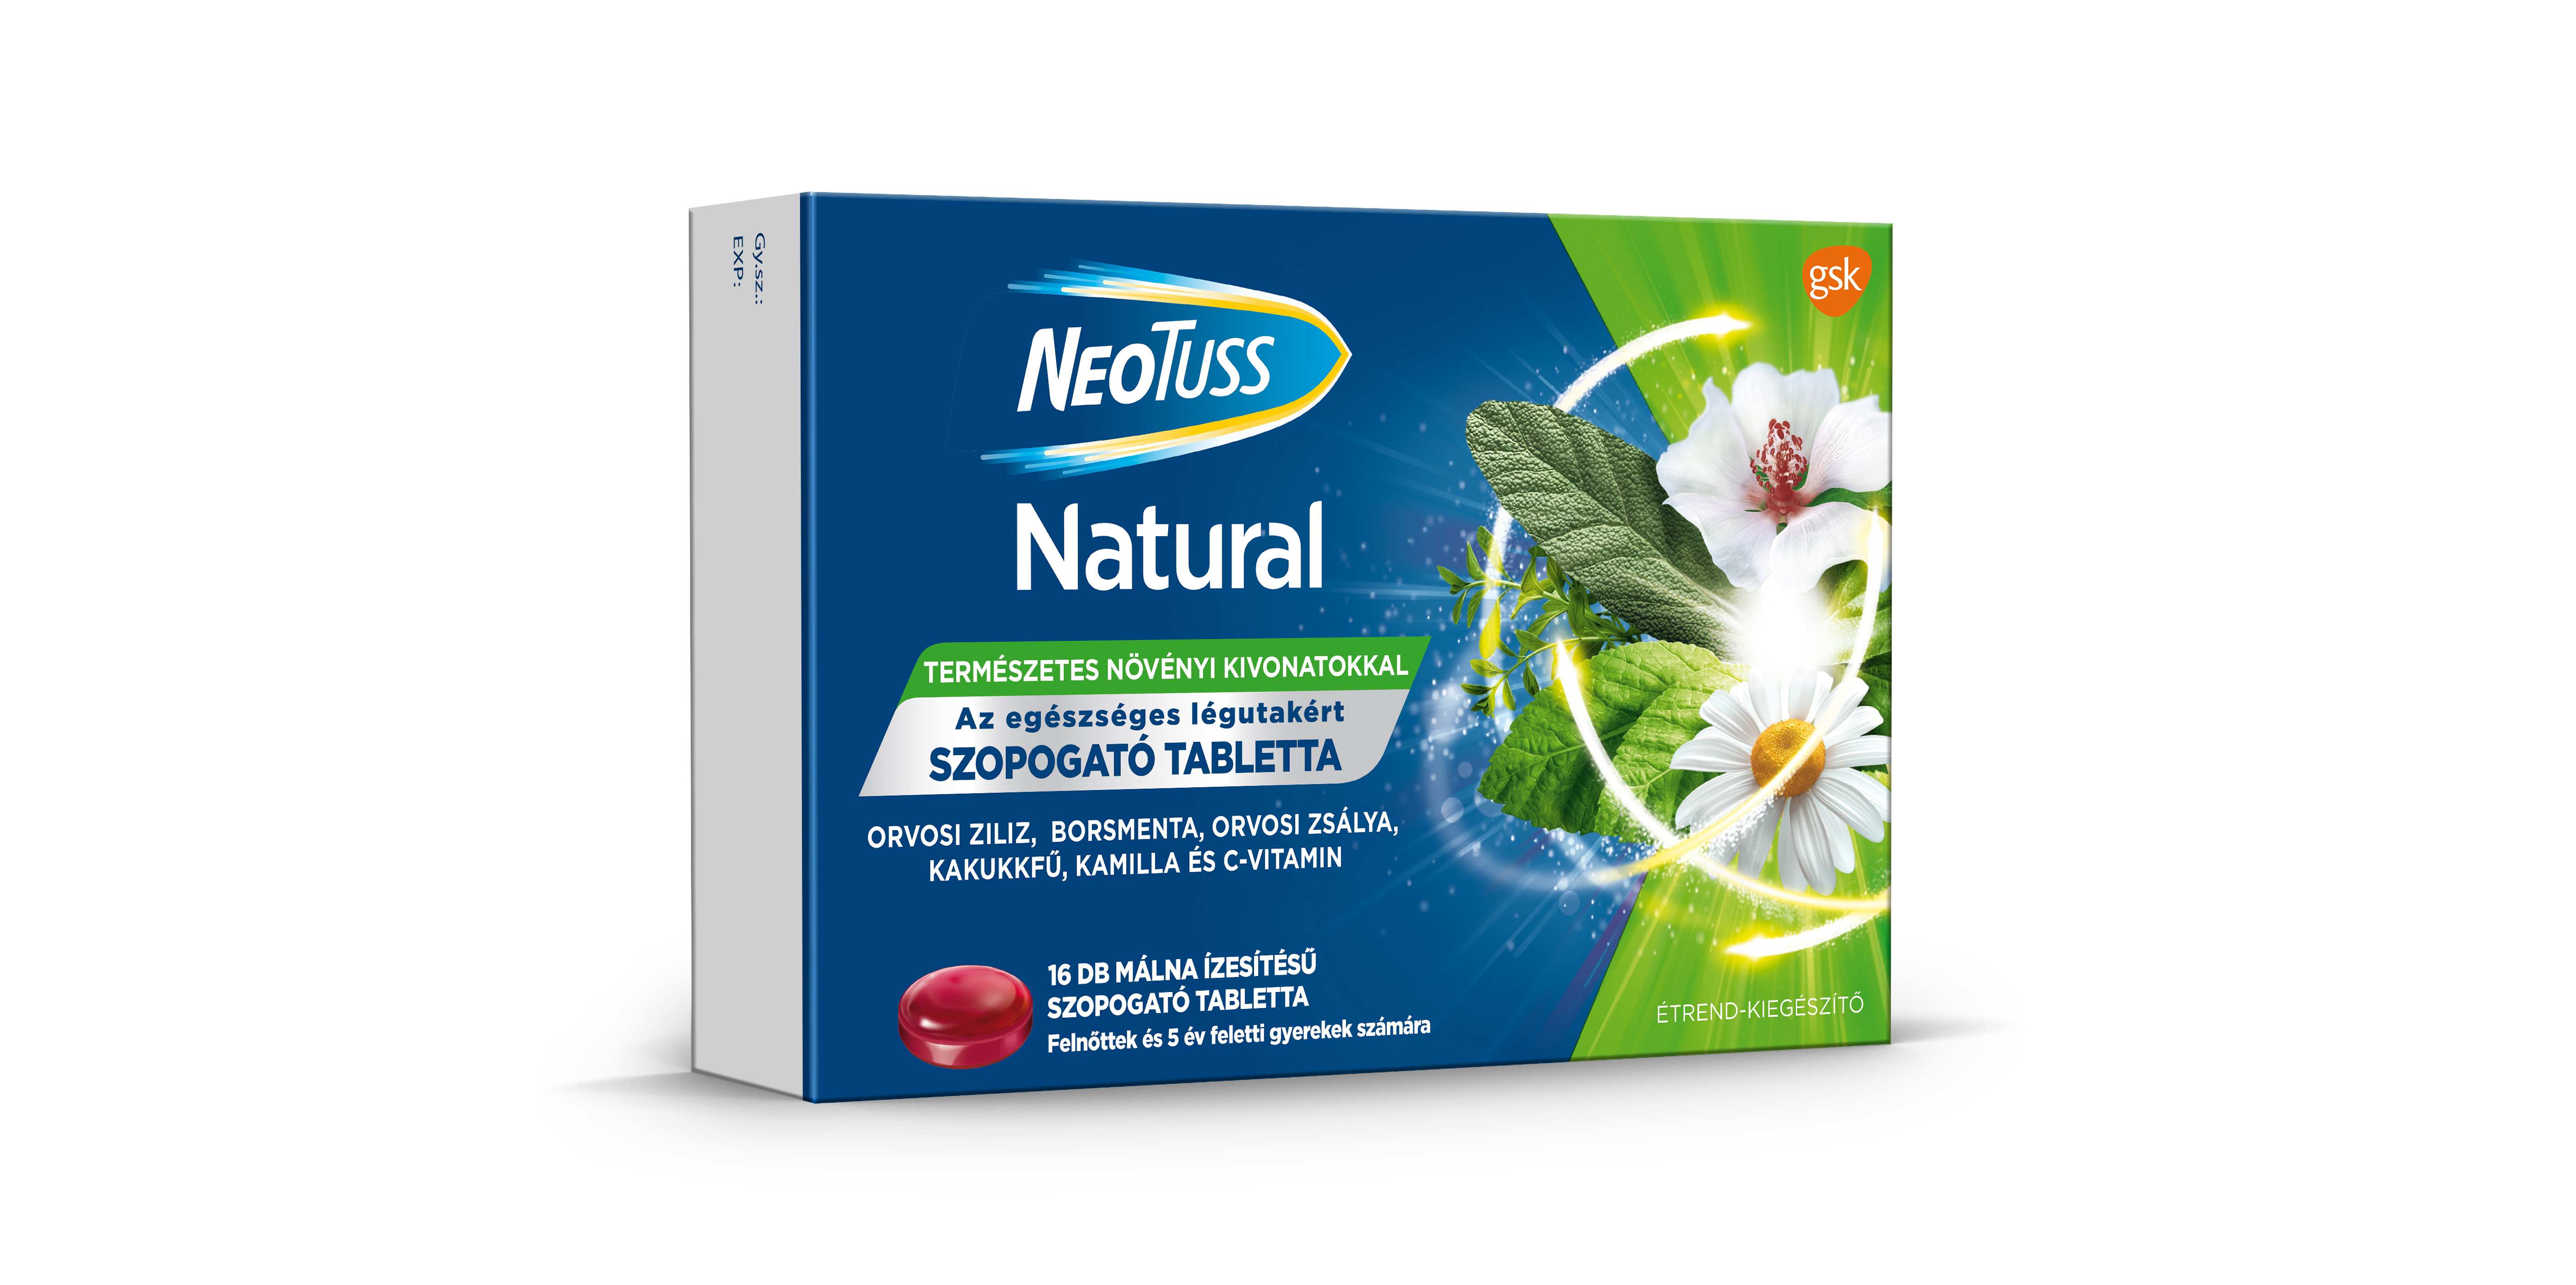 NeoTuss Natural szopogató tabletta málna ízű